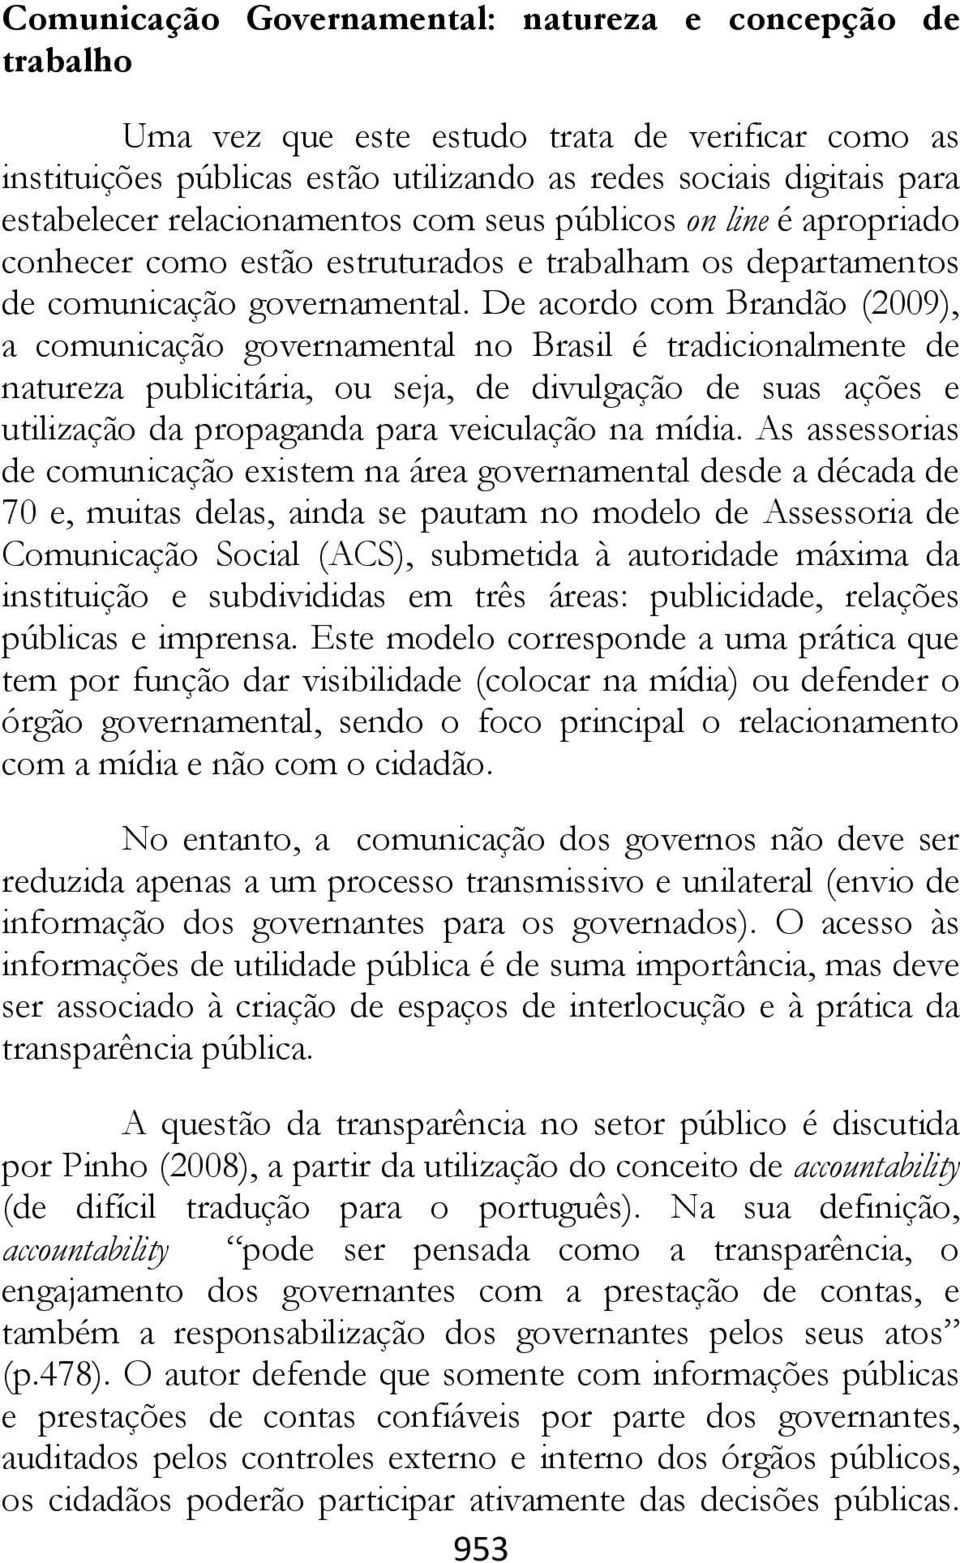 De acordo com Brandão (2009), a comunicação governamental no Brasil é tradicionalmente de natureza publicitária, ou seja, de divulgação de suas ações e utilização da propaganda para veiculação na